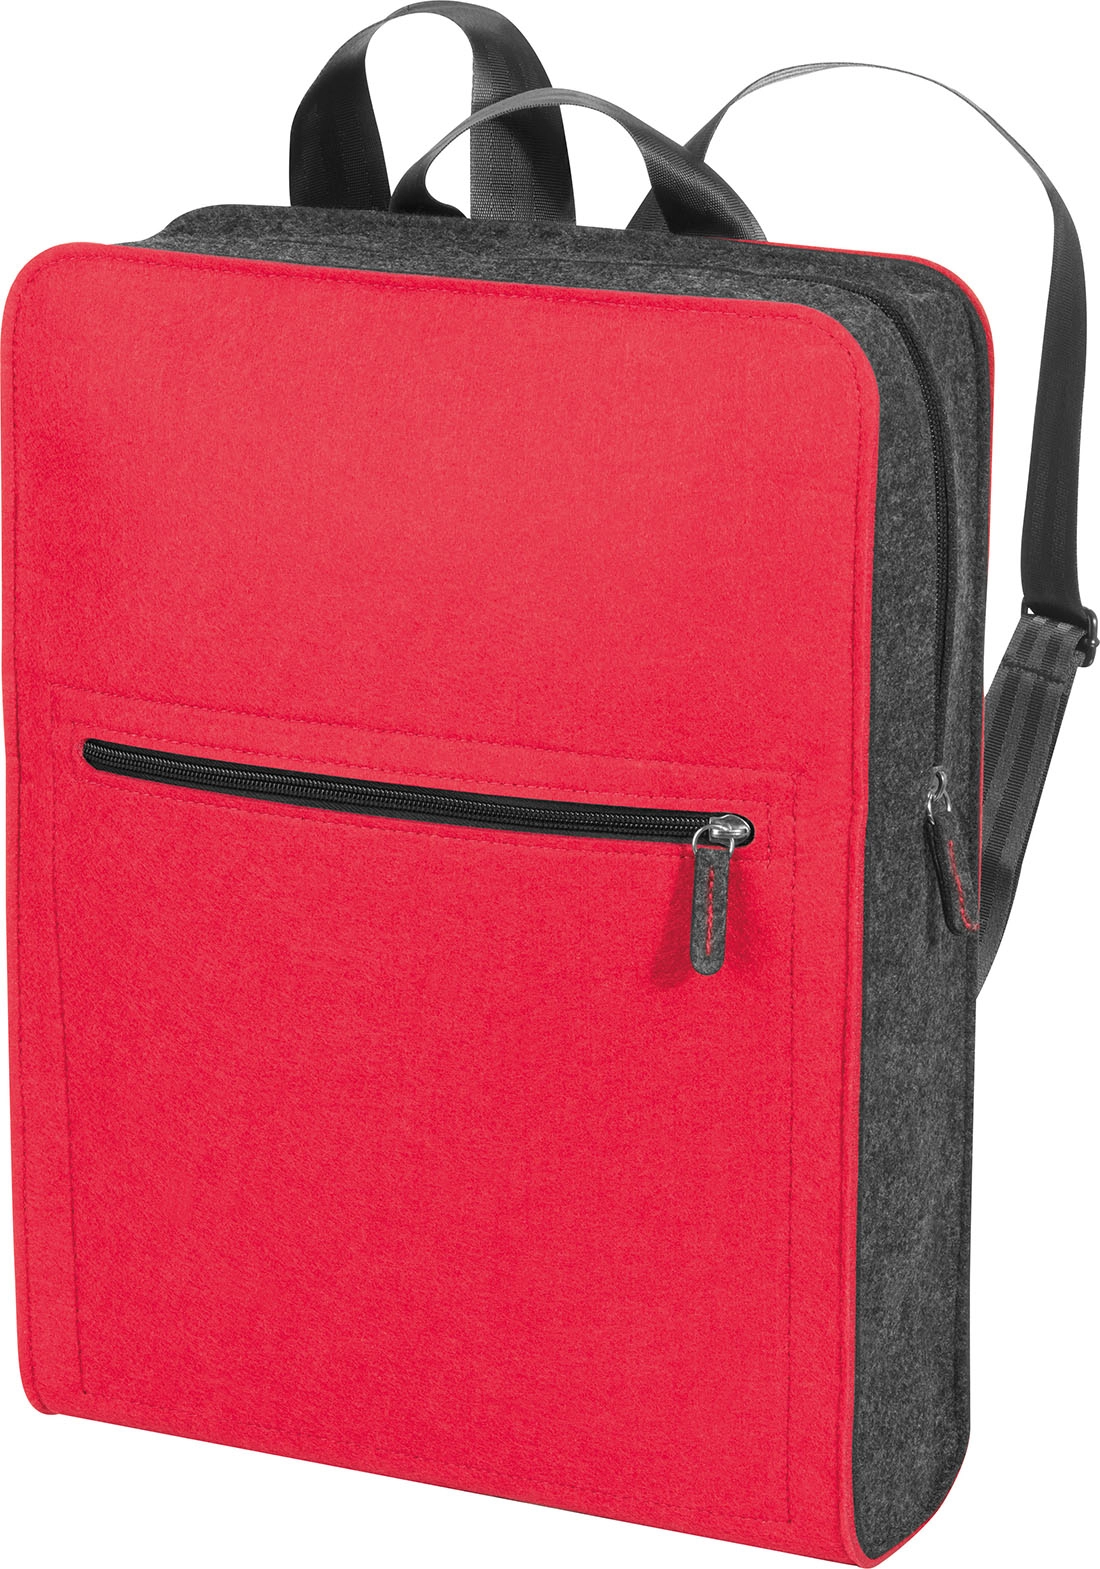 Plecak z filcu GM-60163-05 czerwony